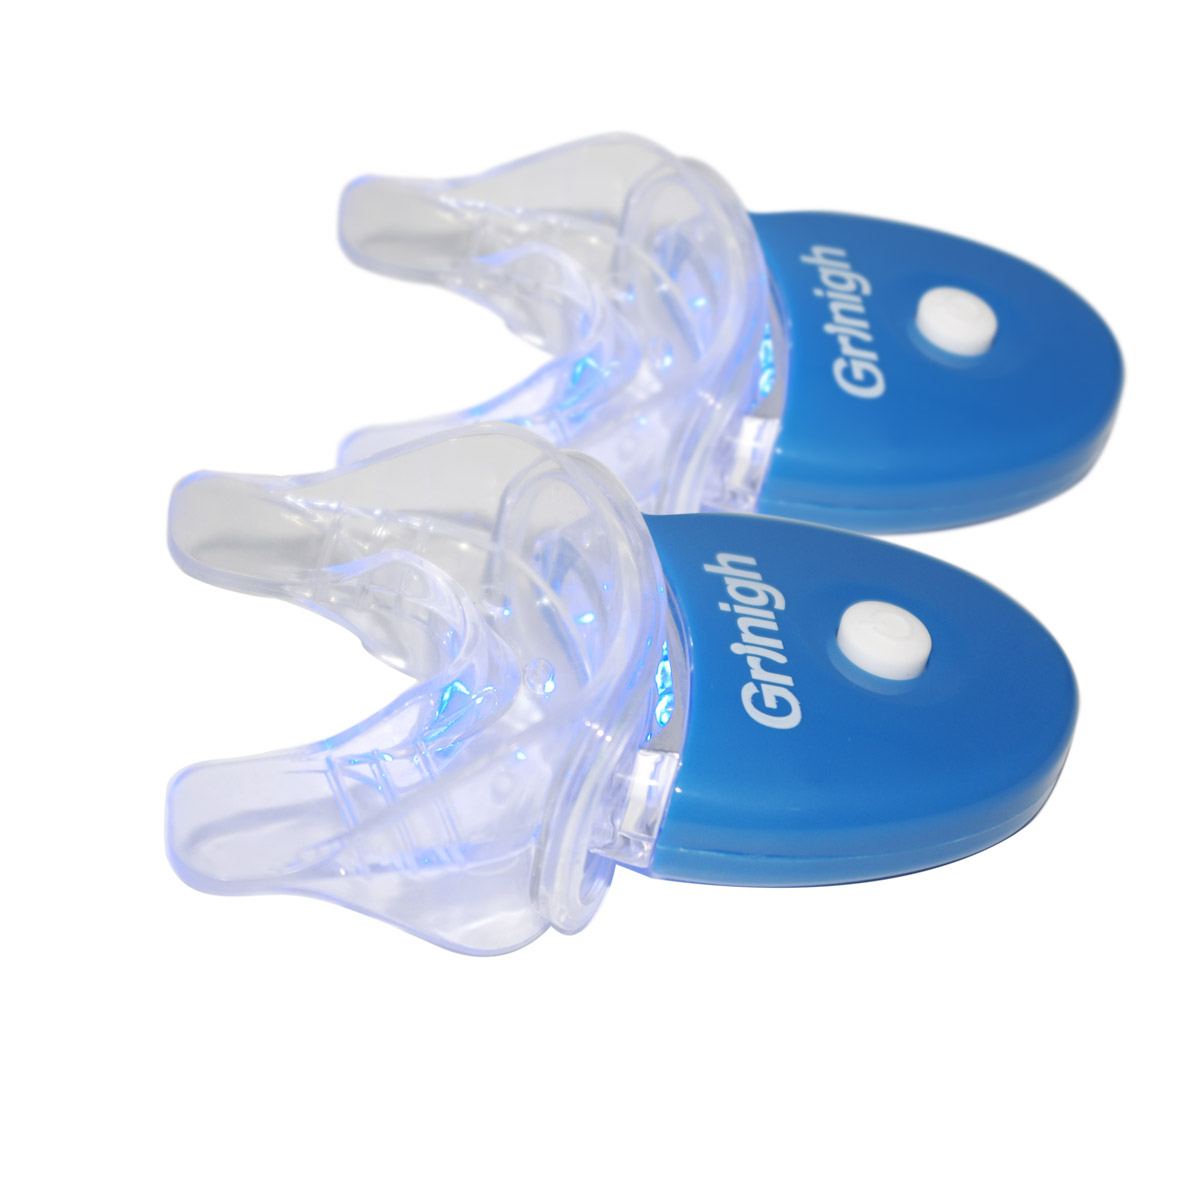 Grin365 2 承認されたホームホワイトニングシステムCE用のミニ歯科白色光LEDと一致した口トレイを設定します。